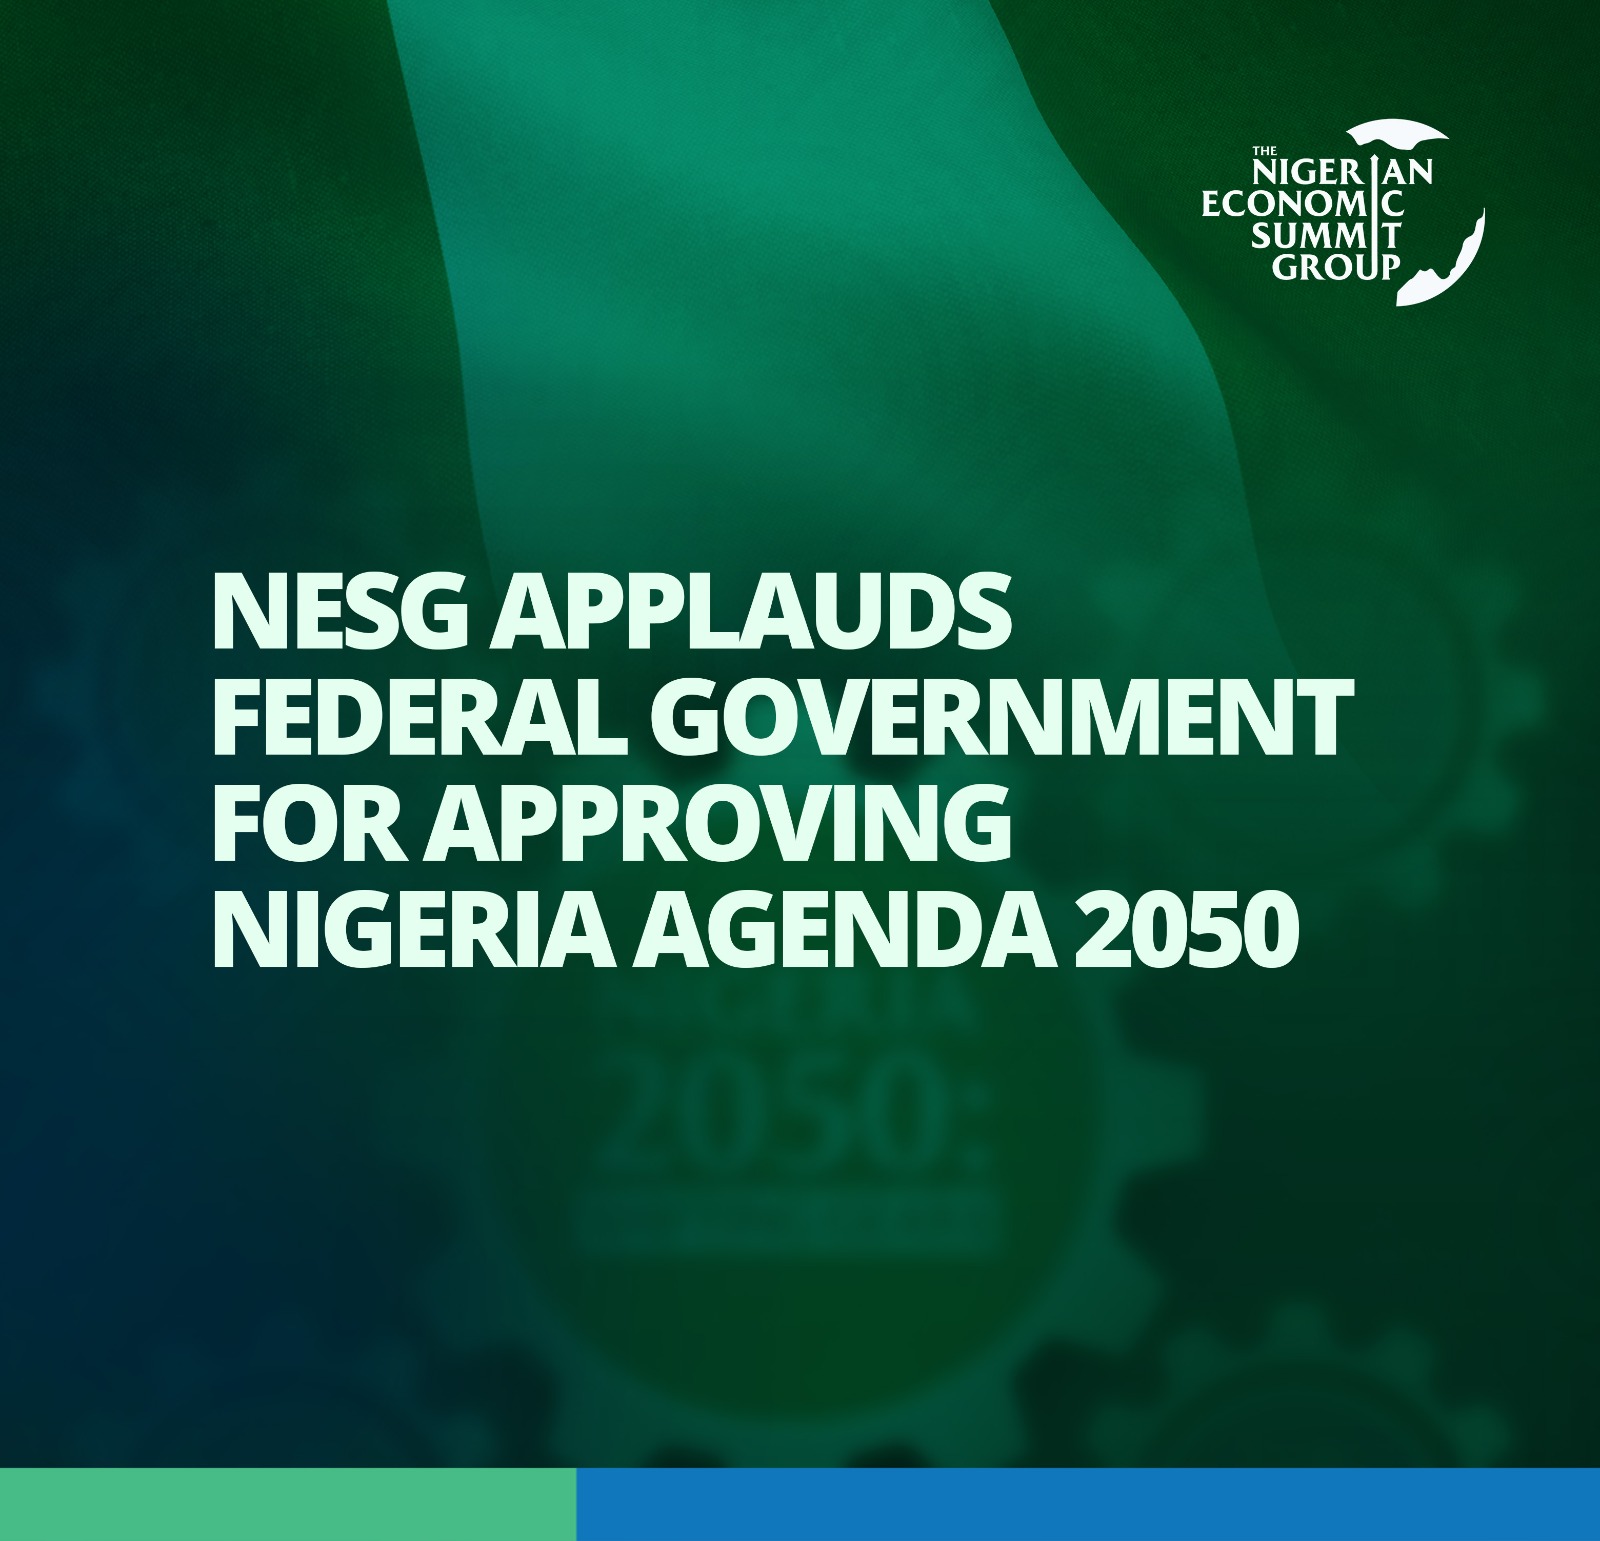 NESG Applauds Federal Government for Approving Nigeria Agenda 2050